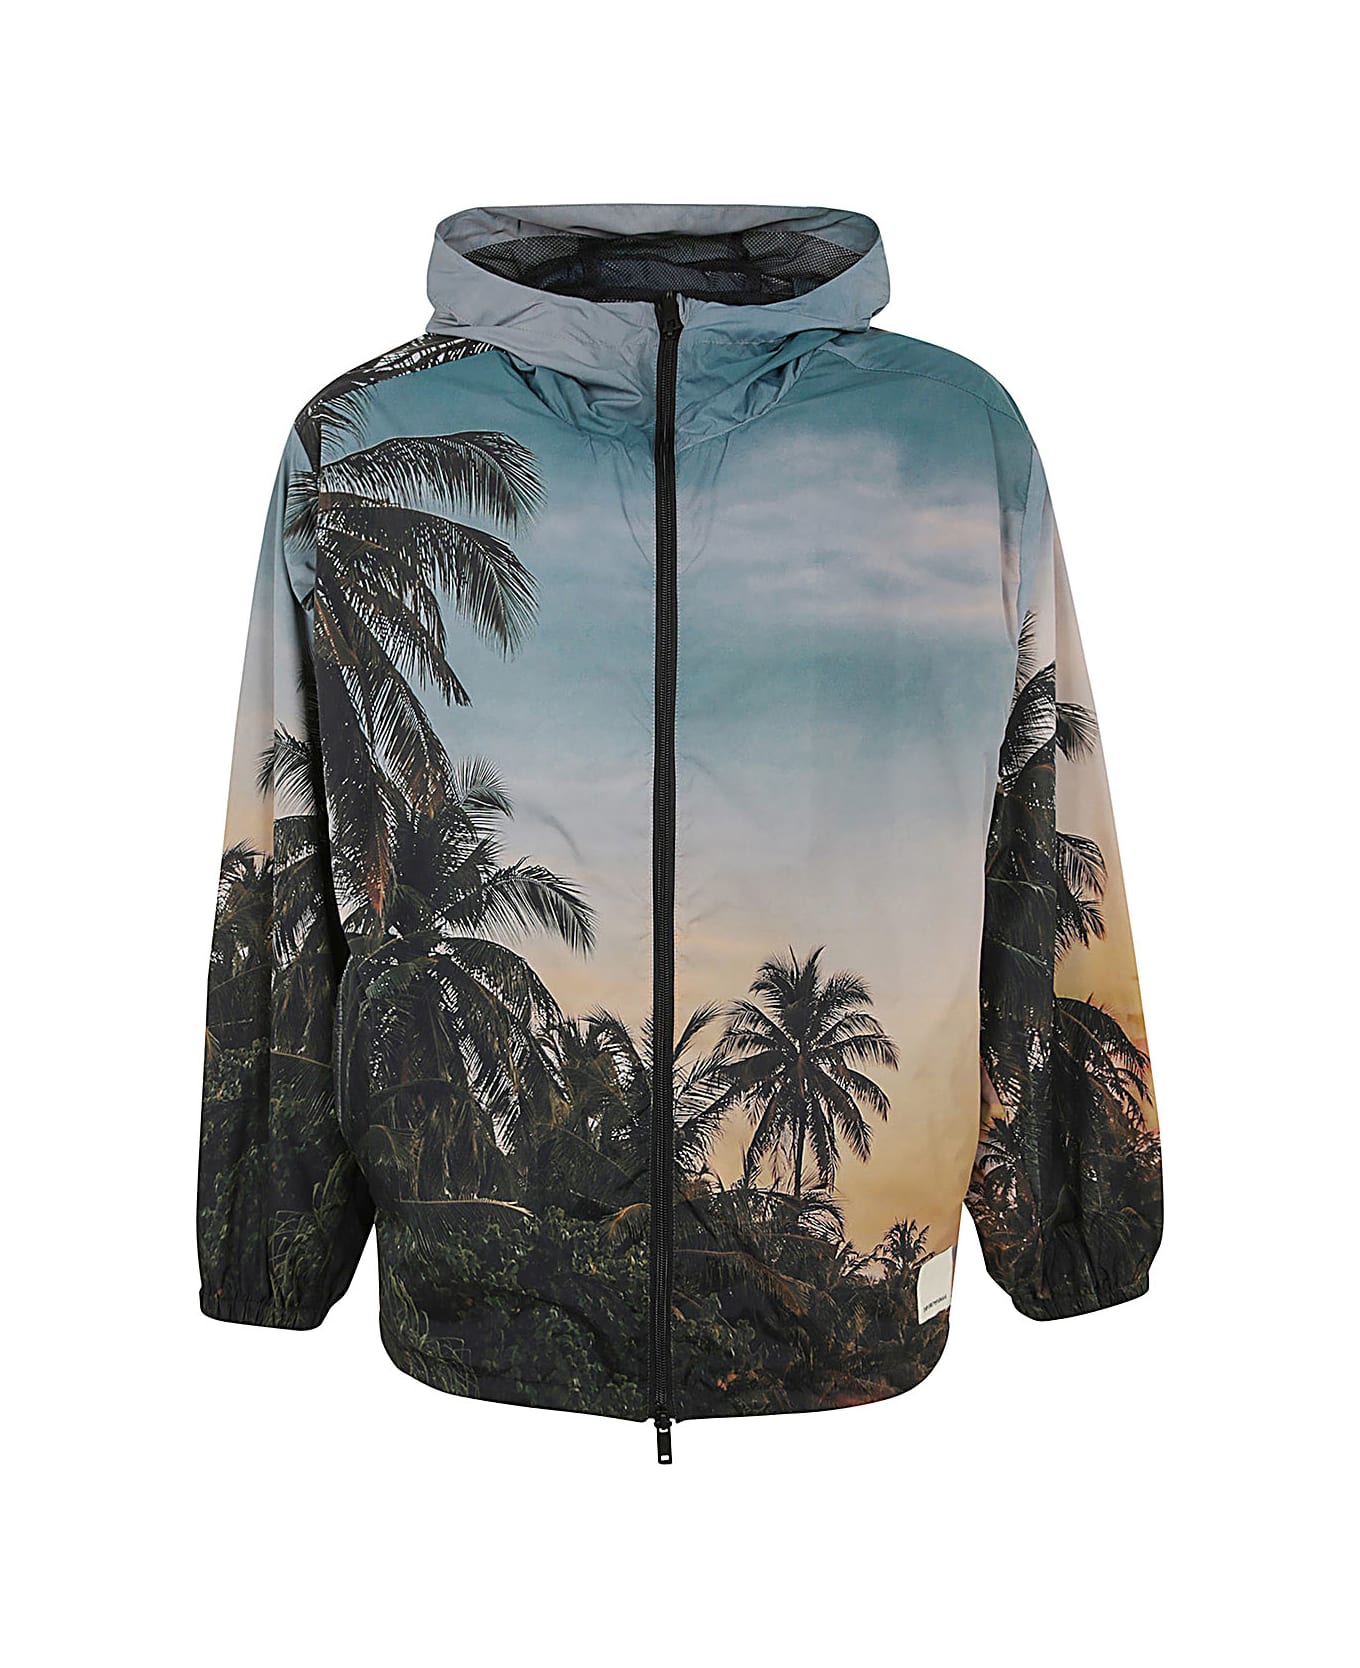 Emporio Armani Blouson Jacket - Tropical Print